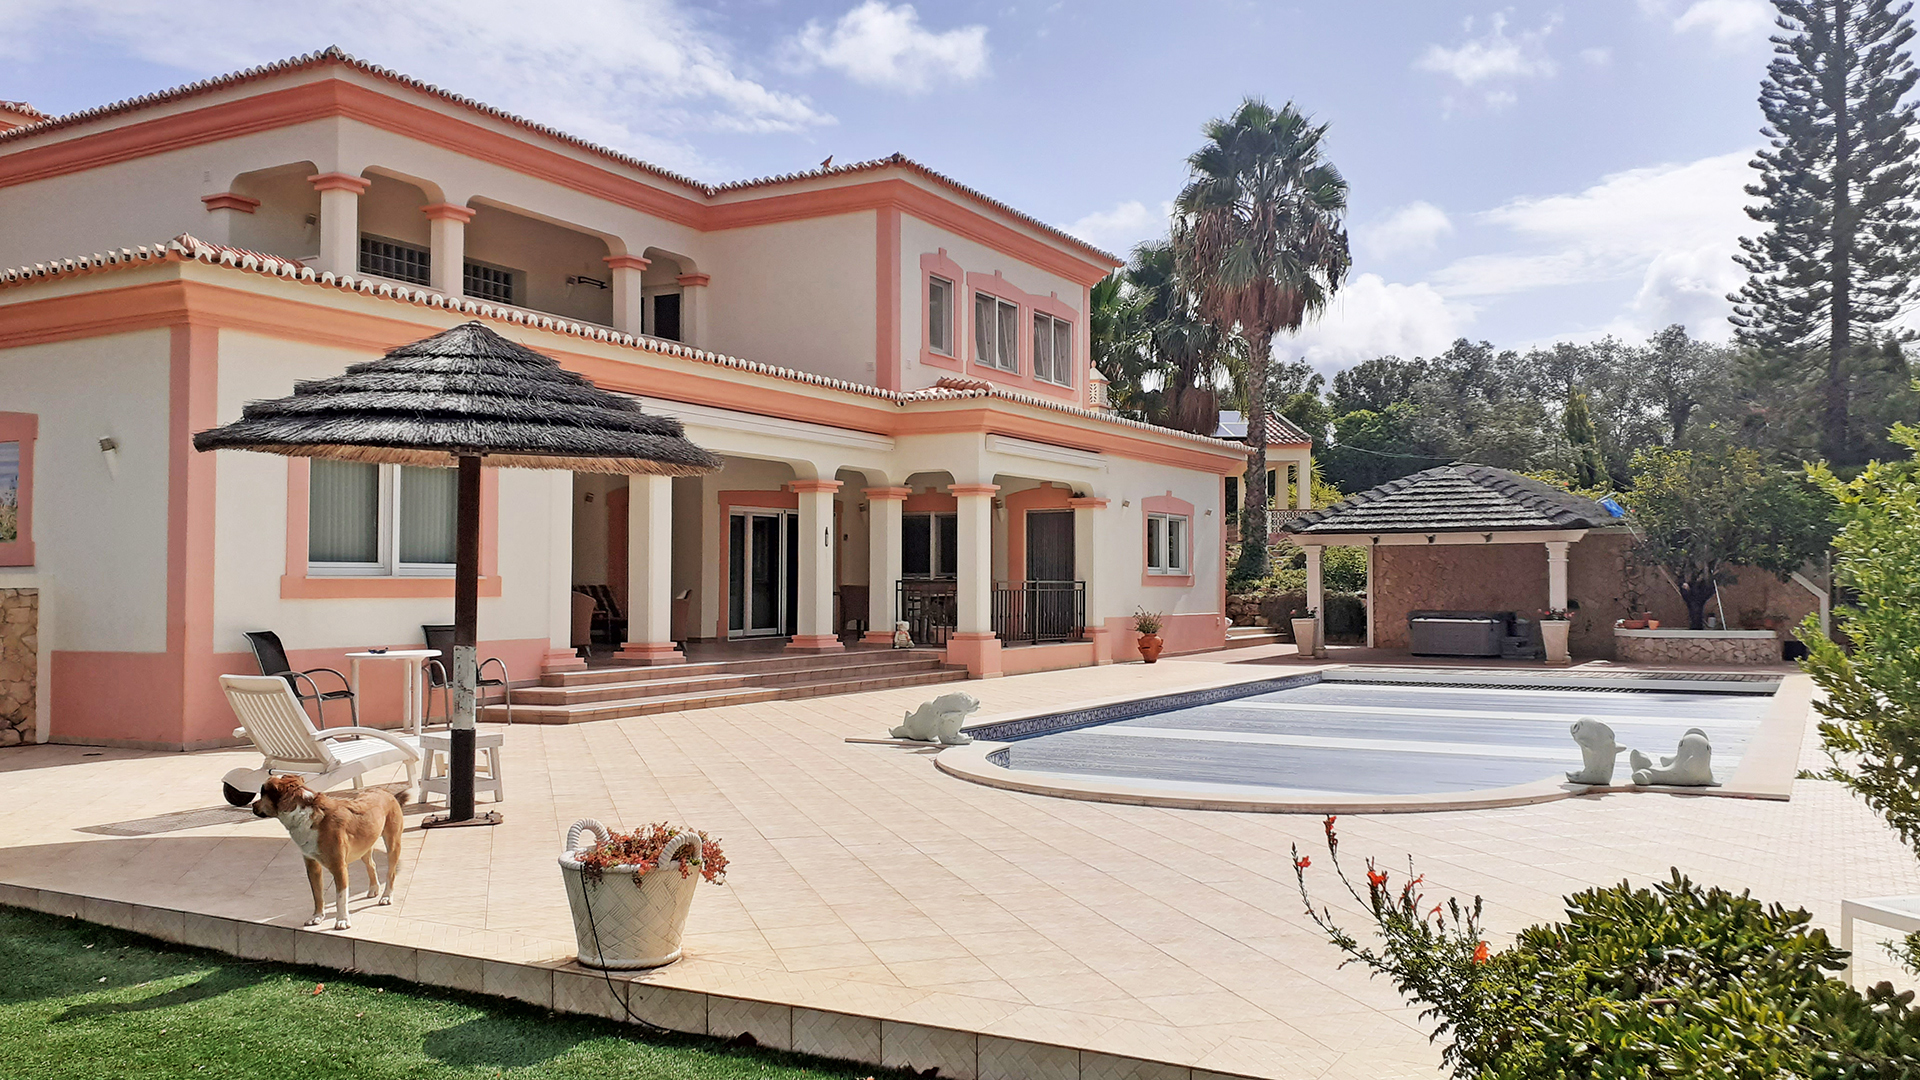 Villa de 5 chambres avec annexe et grande piscine à Monte Judeu, Algarve Ouest | LG1701 Cette villa de luxe de 5 chambres construite en 2008 est située à Monte Judeu, au nord d'Alvor. La propriété est magnifiquement conçue sur 2 niveaux et située dans un cul-de-sac privé. La villa dispose d'un terrain de 5150 m², d'une piscine privée et d'une grande annexe indépendante. Tout dans cette propriété de l'Algarve est de la plus haute qualité et doit être vu. Proche golf et plage.